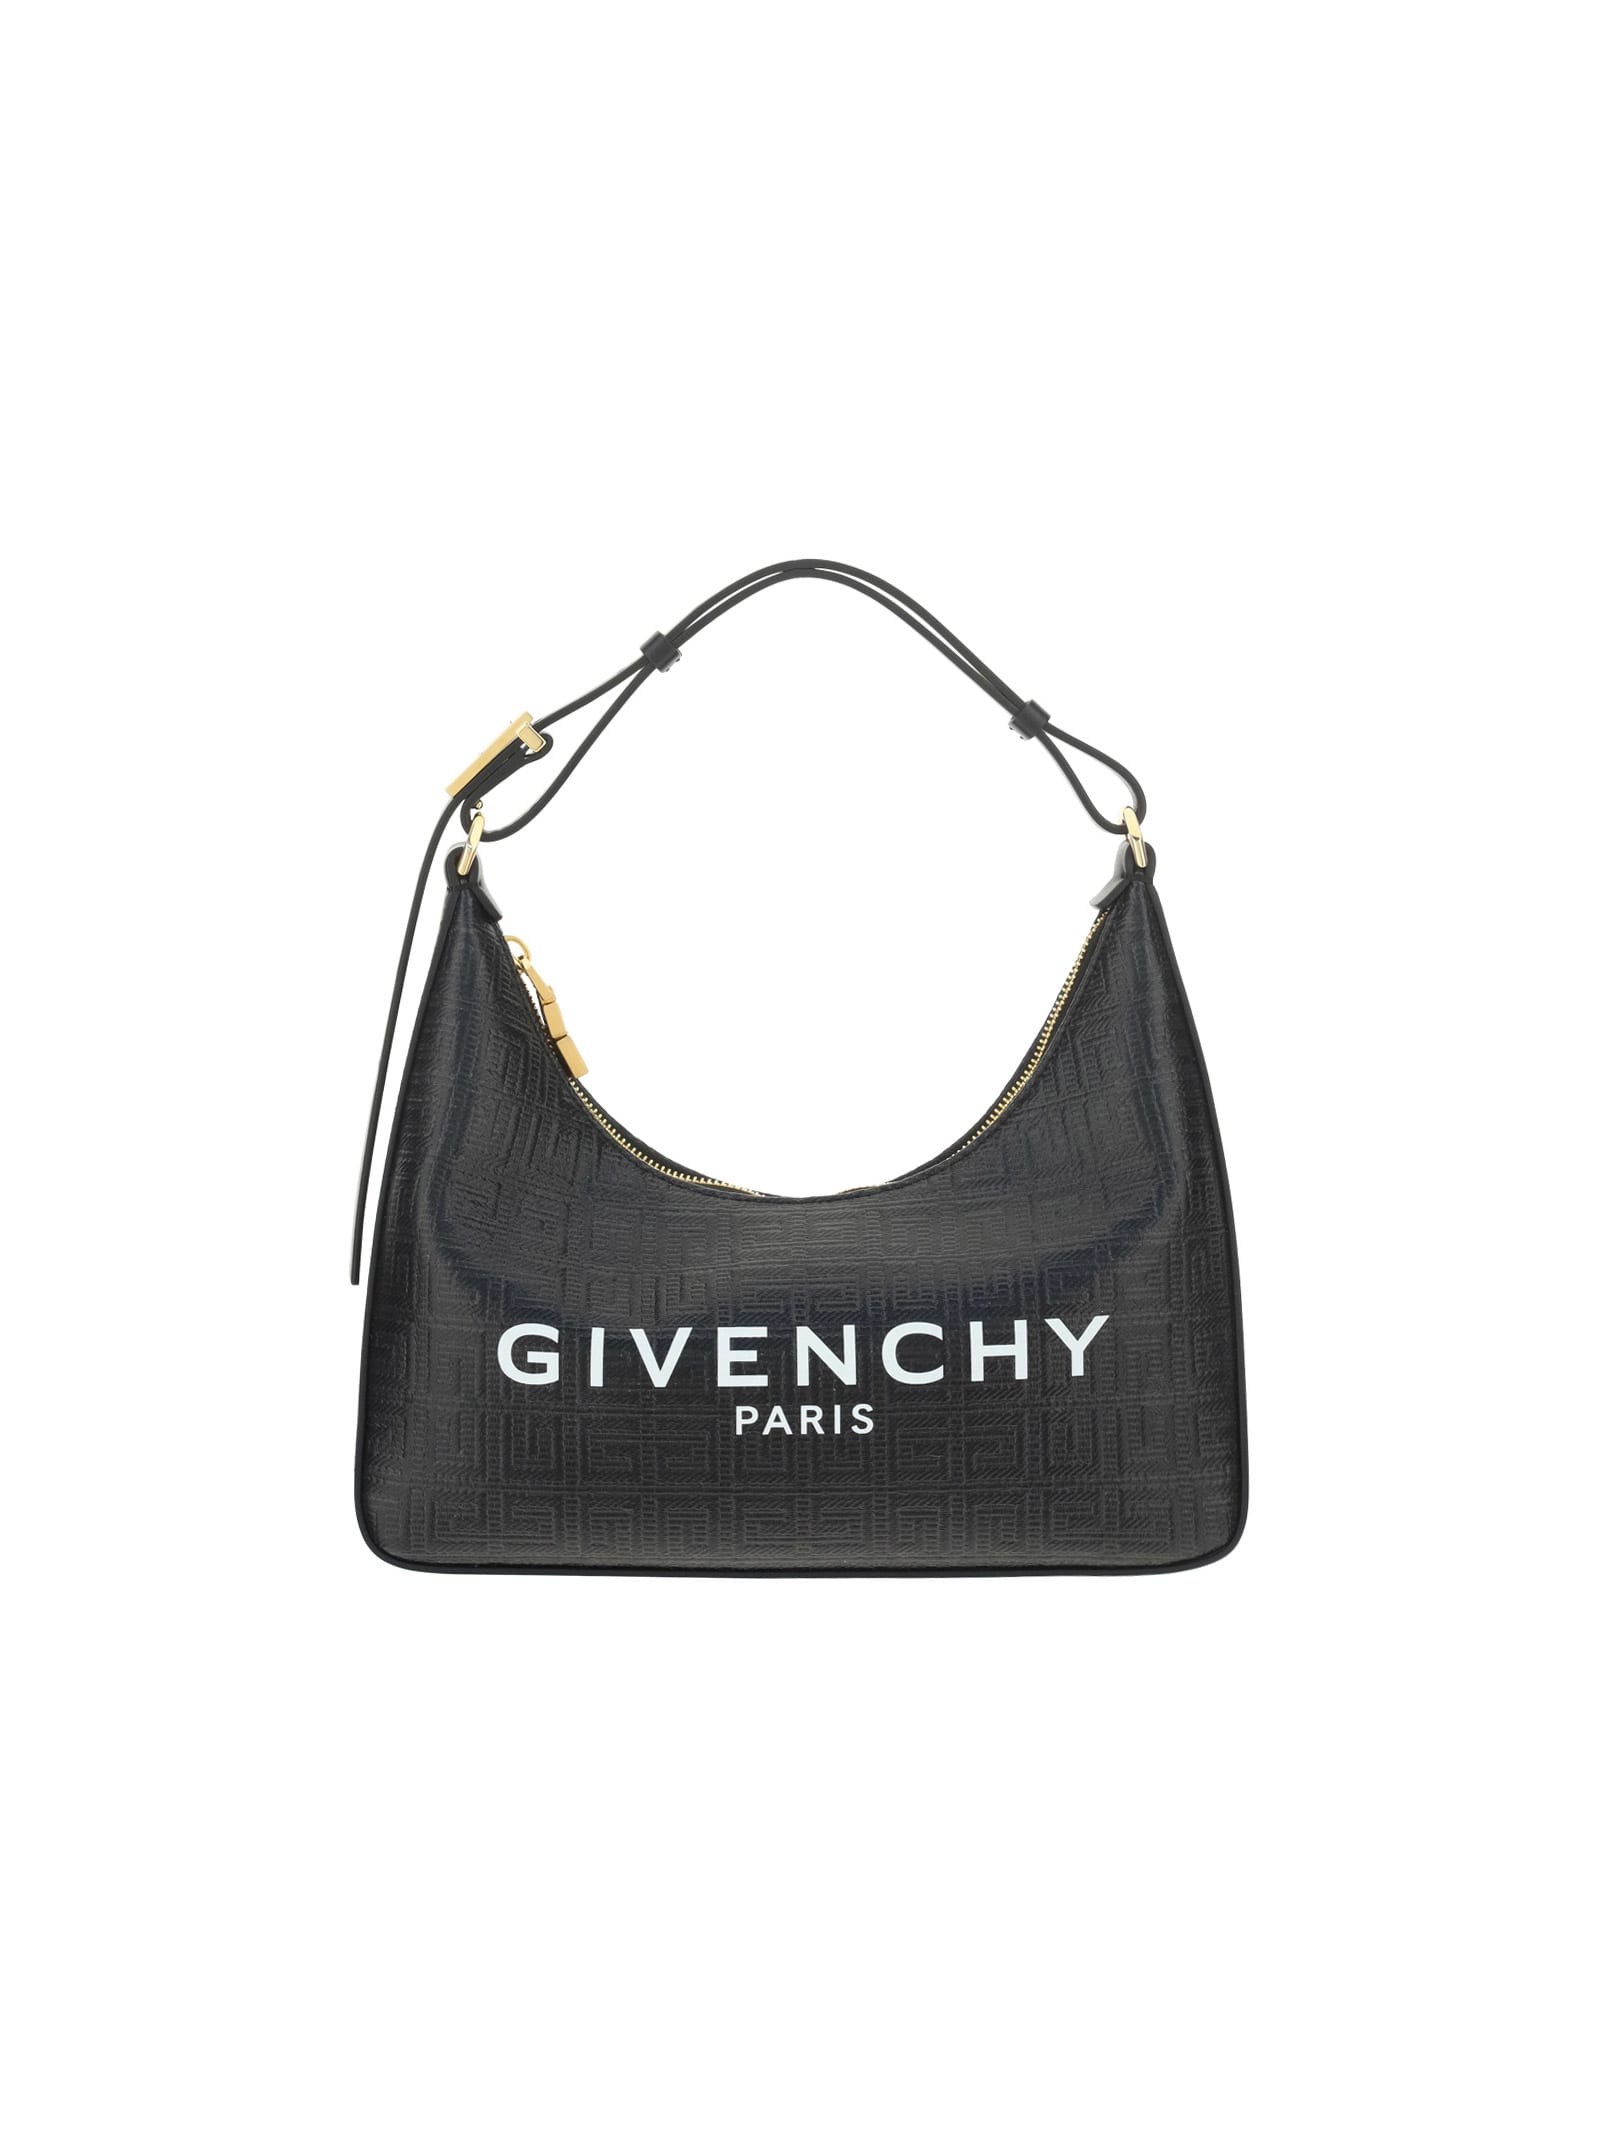 Givenchy Moon Bag